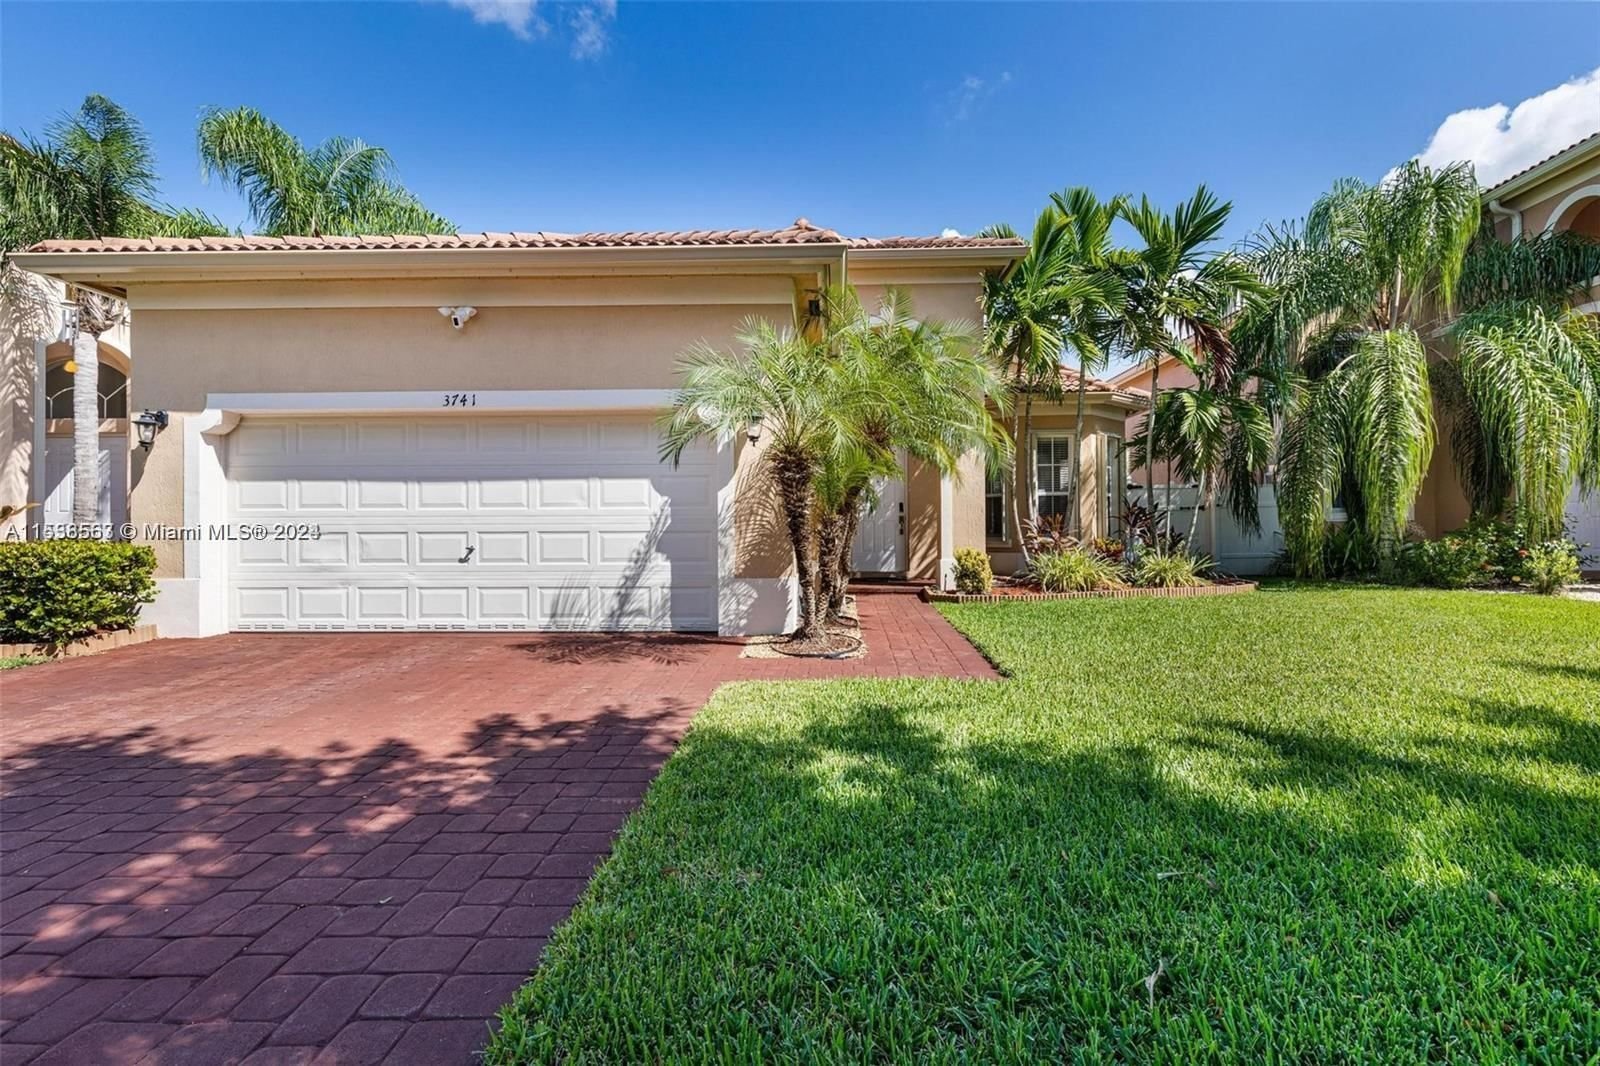 Real estate property located at 3741 15th St, Miami-Dade County, PORTOFINO LAKES, Homestead, FL